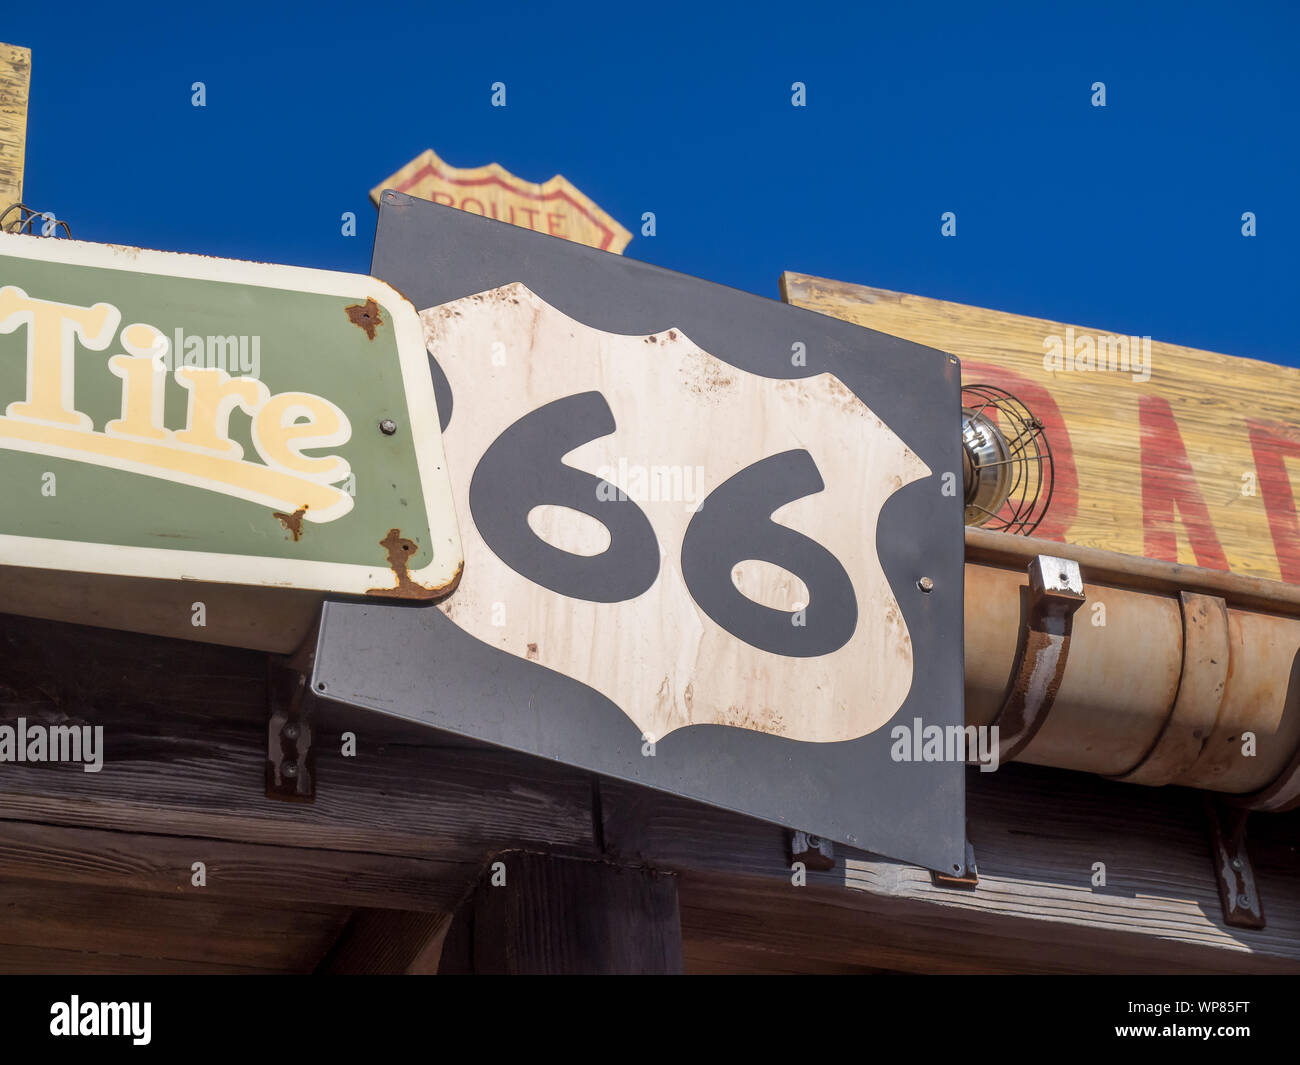 Vintage Route 66 autostrada indicazioni su un vecchio rustico sfondo. Foto Stock